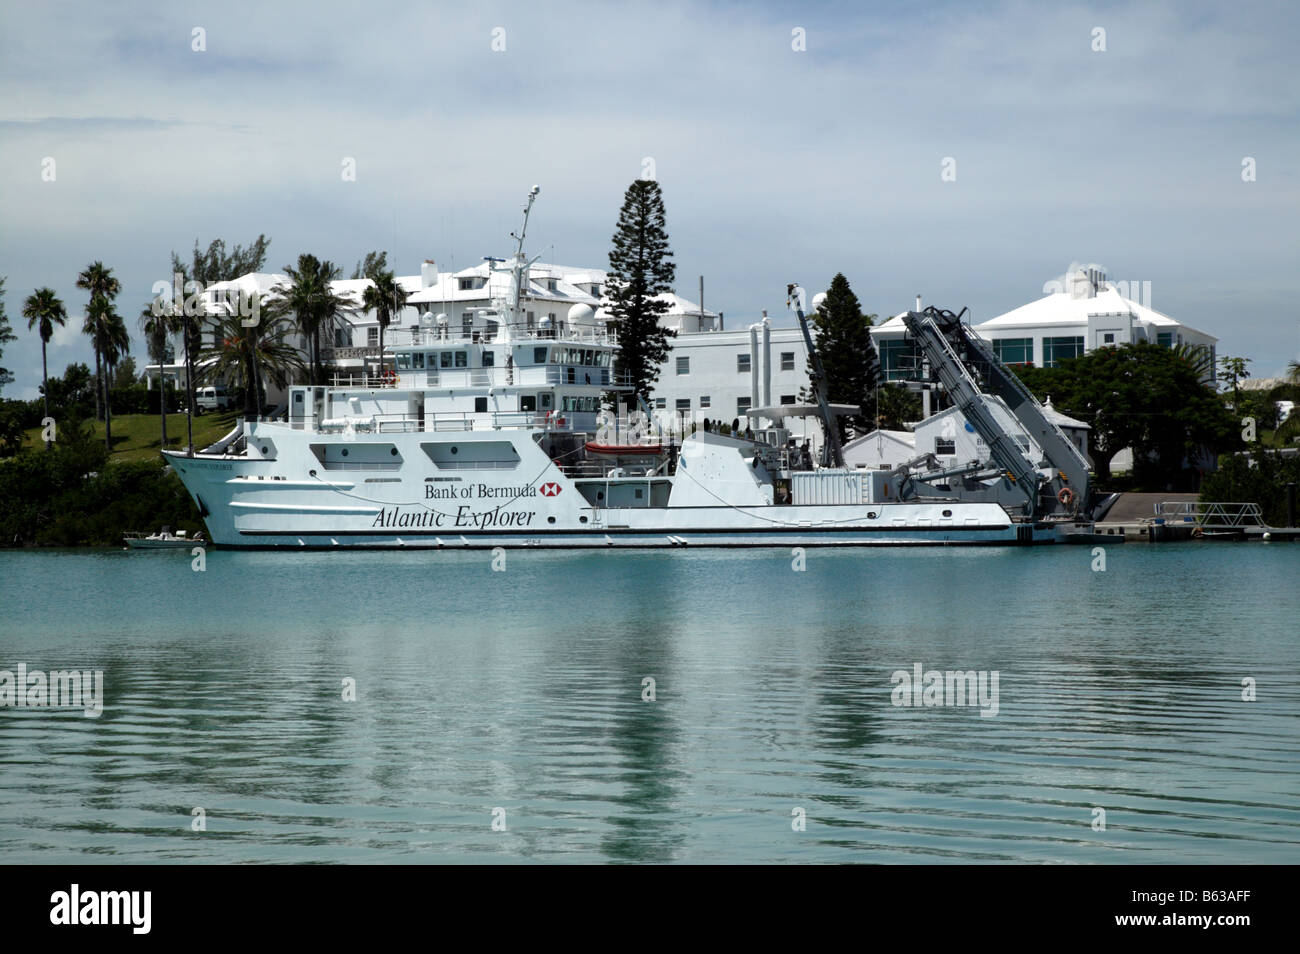 Photo de l'R/V Atlantic Explorer, un navire de recherche océanographique par opperated la Bermuda Institut des sciences de la mer Banque D'Images